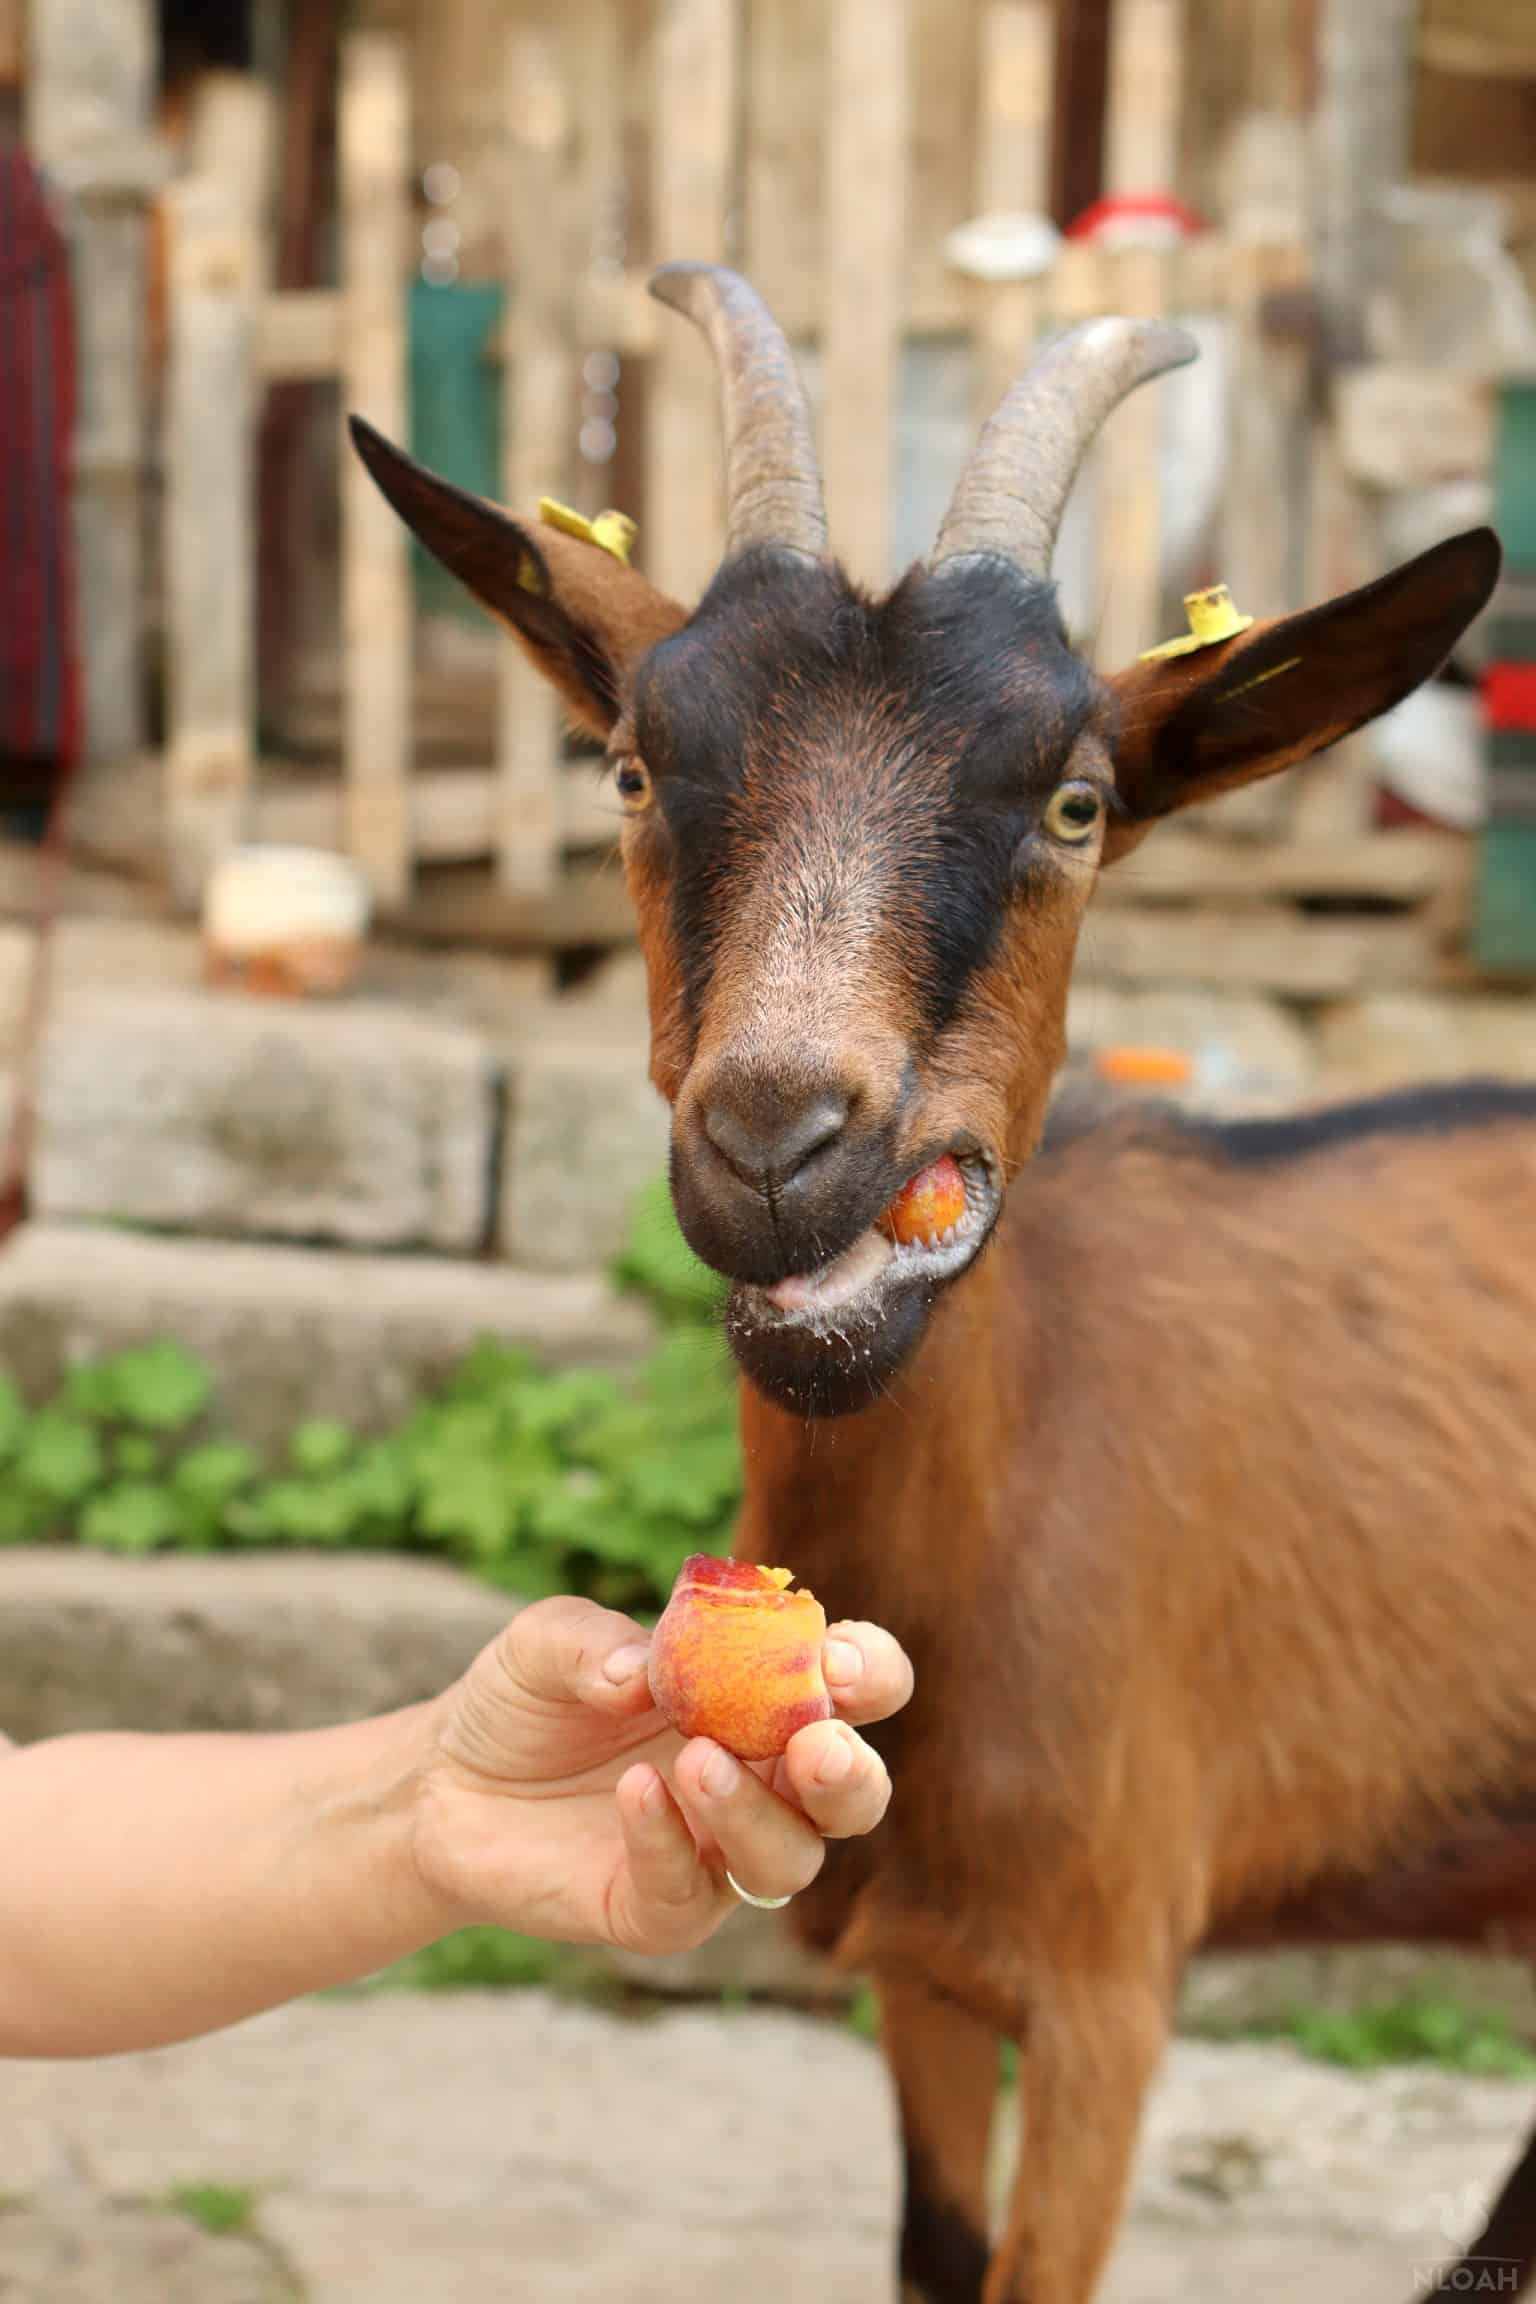 a goat eating a peach